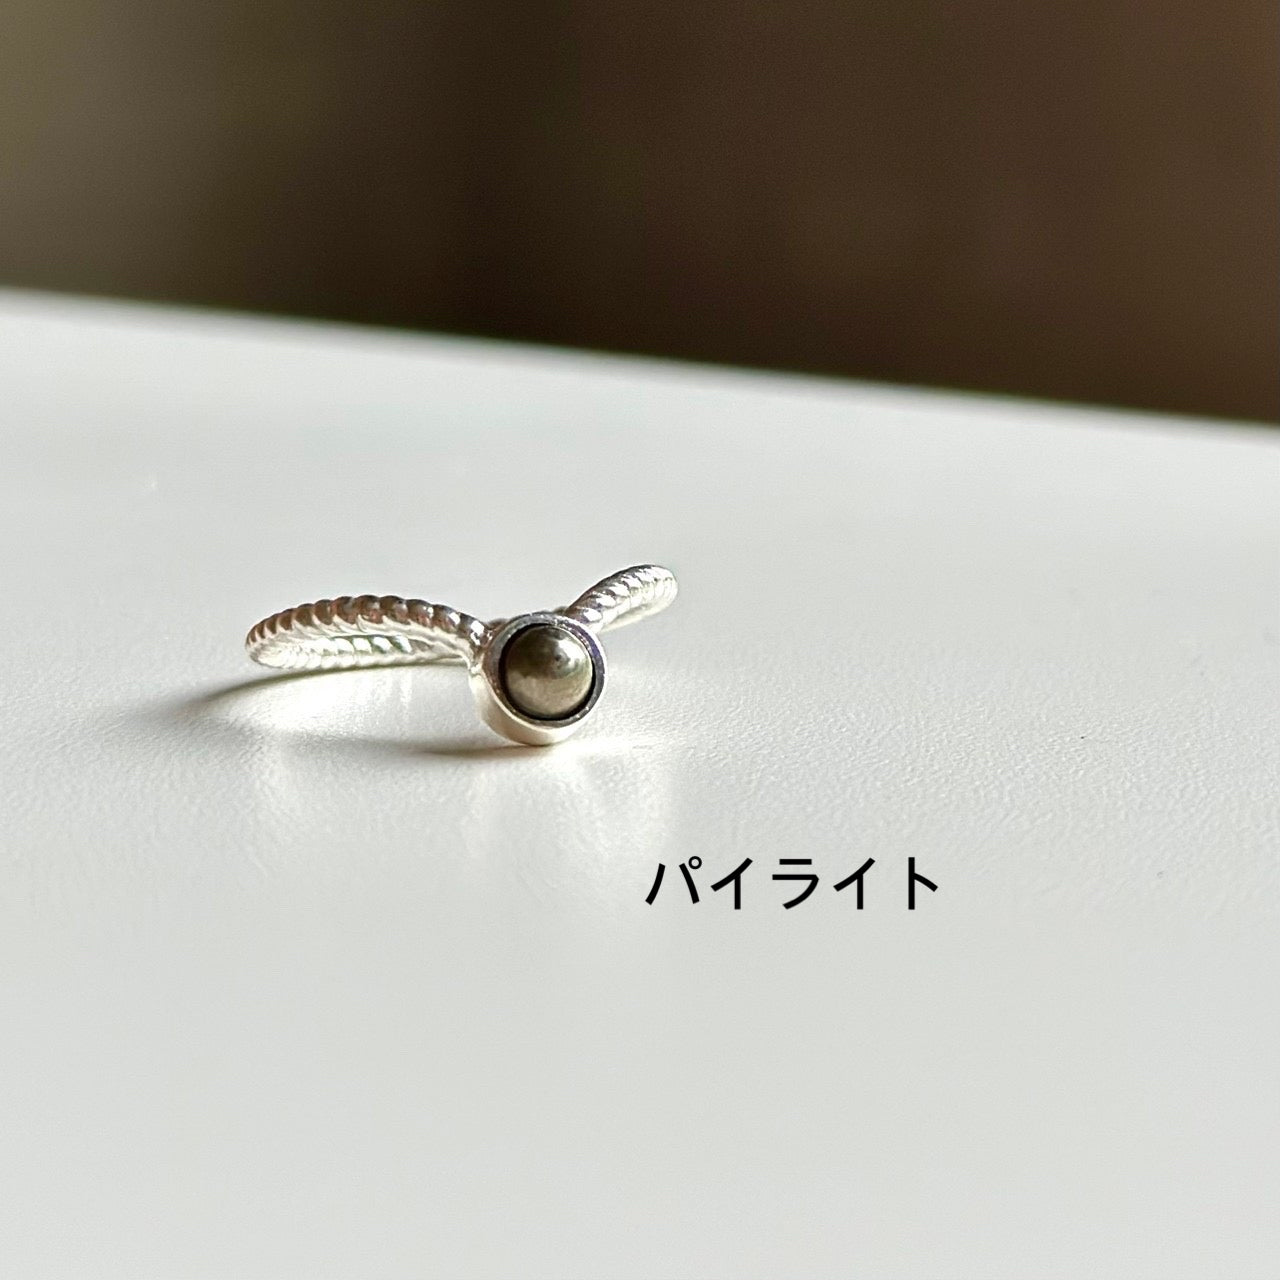 Silver925 V petit ring